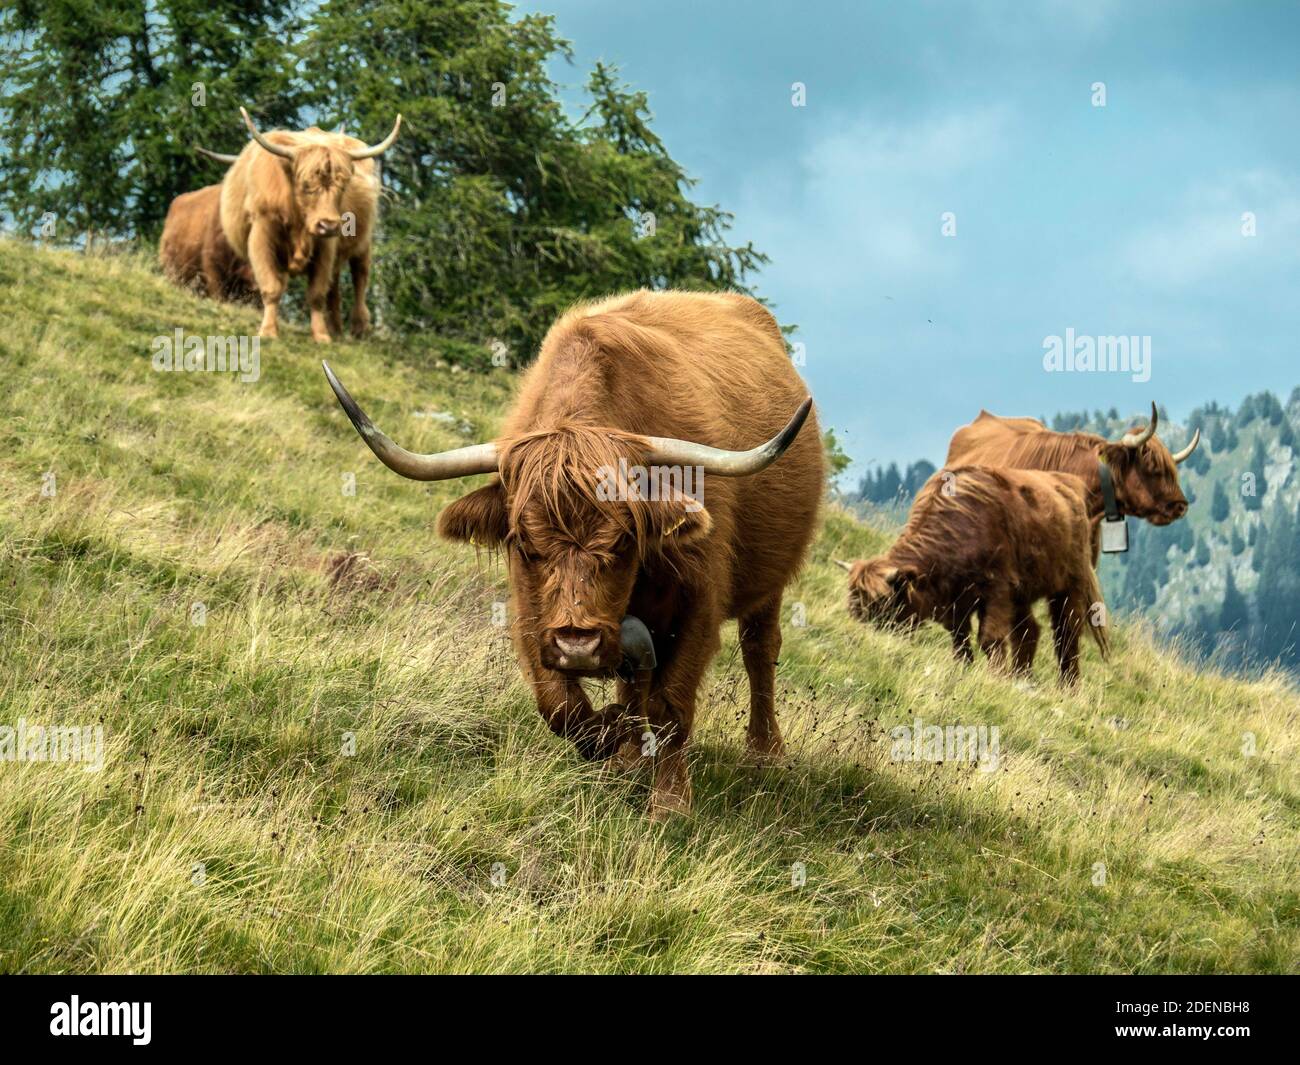 Schottisches Hochlandrind auf Tessiner Alp Foto Stock